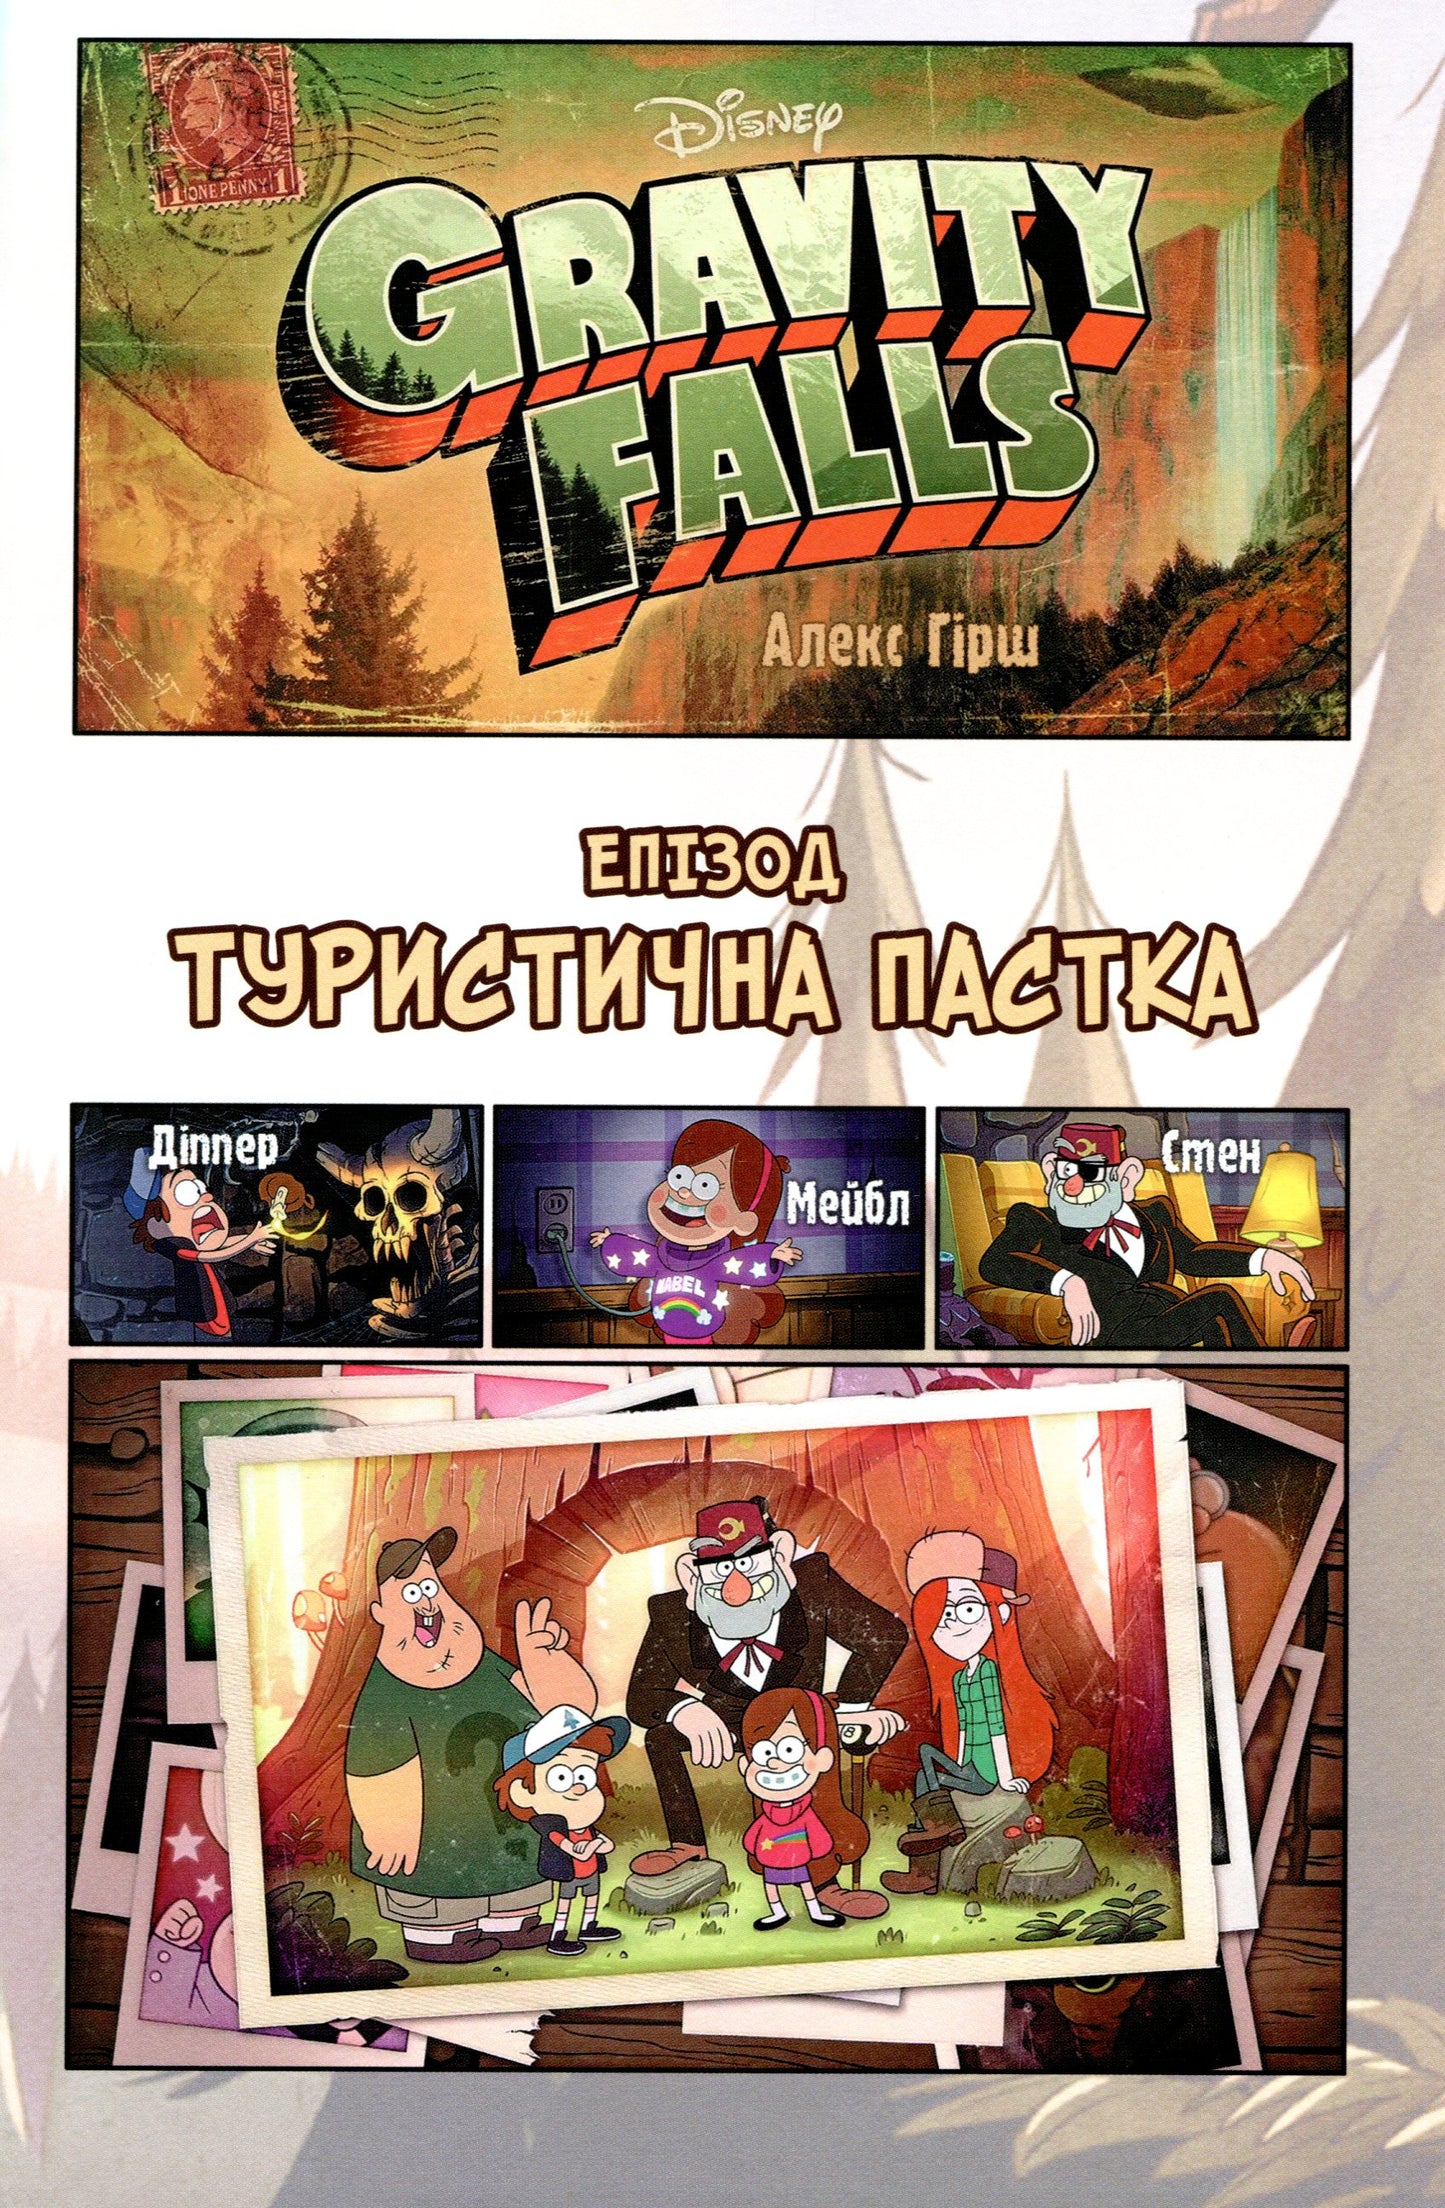 Gravity Falls. Film History In Comics (Set Of 2 Books) / Ґравіті Фолз. Кіноісторія в коміксах (комплект із 2 книг) / Author not specified 9786170958549,9786170958556-7